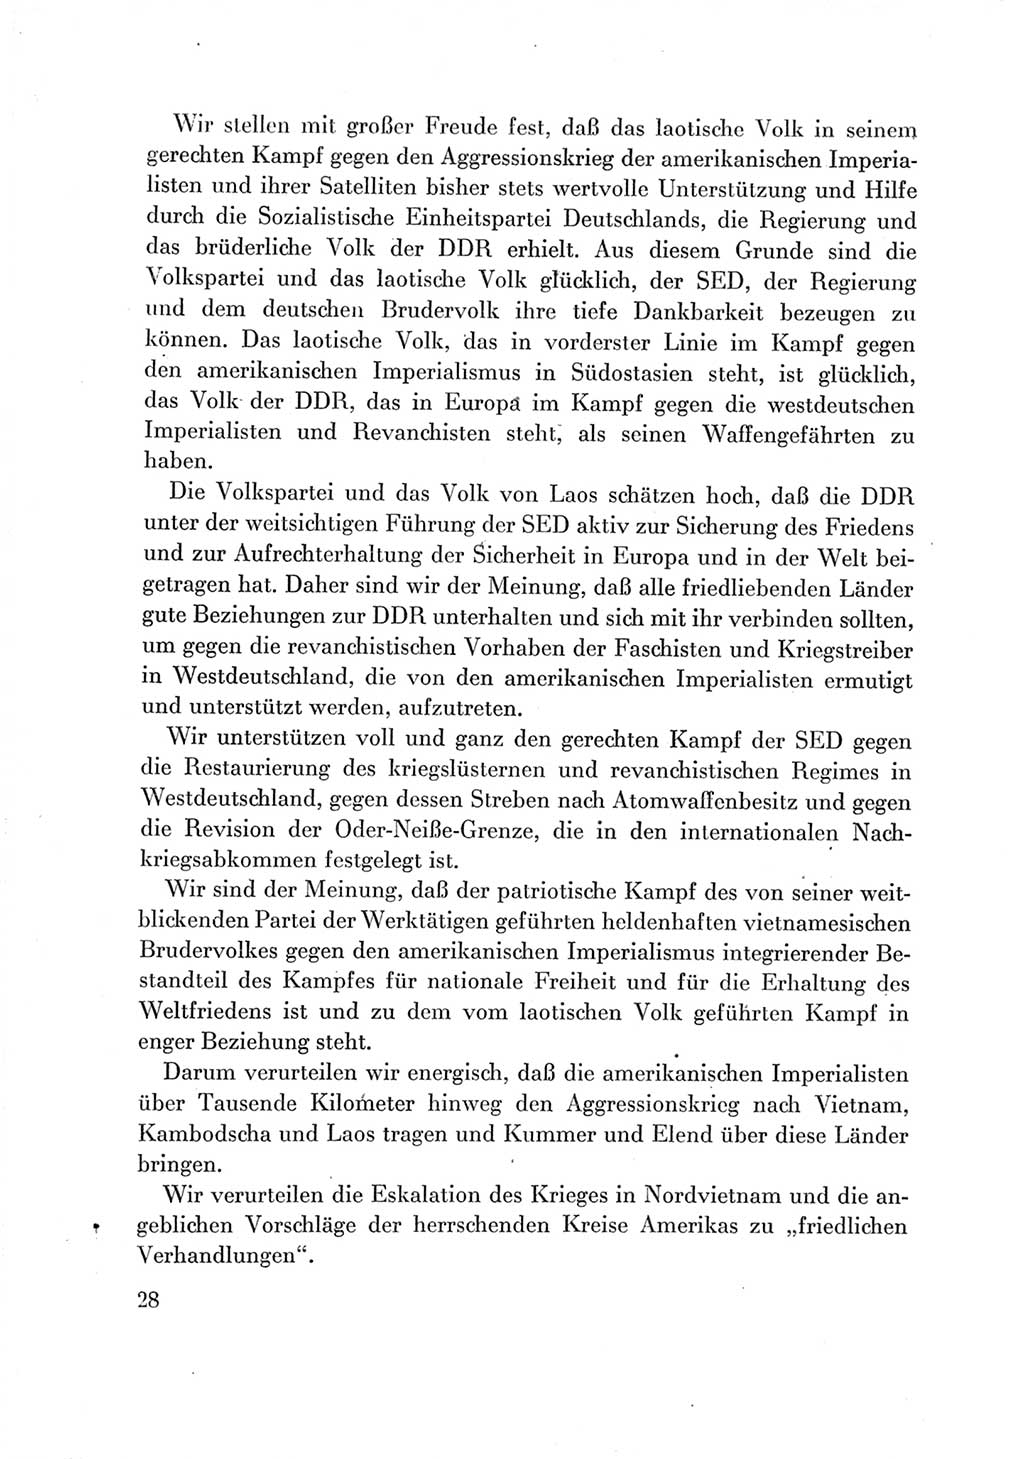 Protokoll der Verhandlungen des Ⅶ. Parteitages der Sozialistischen Einheitspartei Deutschlands (SED) [Deutsche Demokratische Republik (DDR)] 1967, Band Ⅲ, Seite 28 (Prot. Verh. Ⅶ. PT SED DDR 1967, Bd. Ⅲ, S. 28)